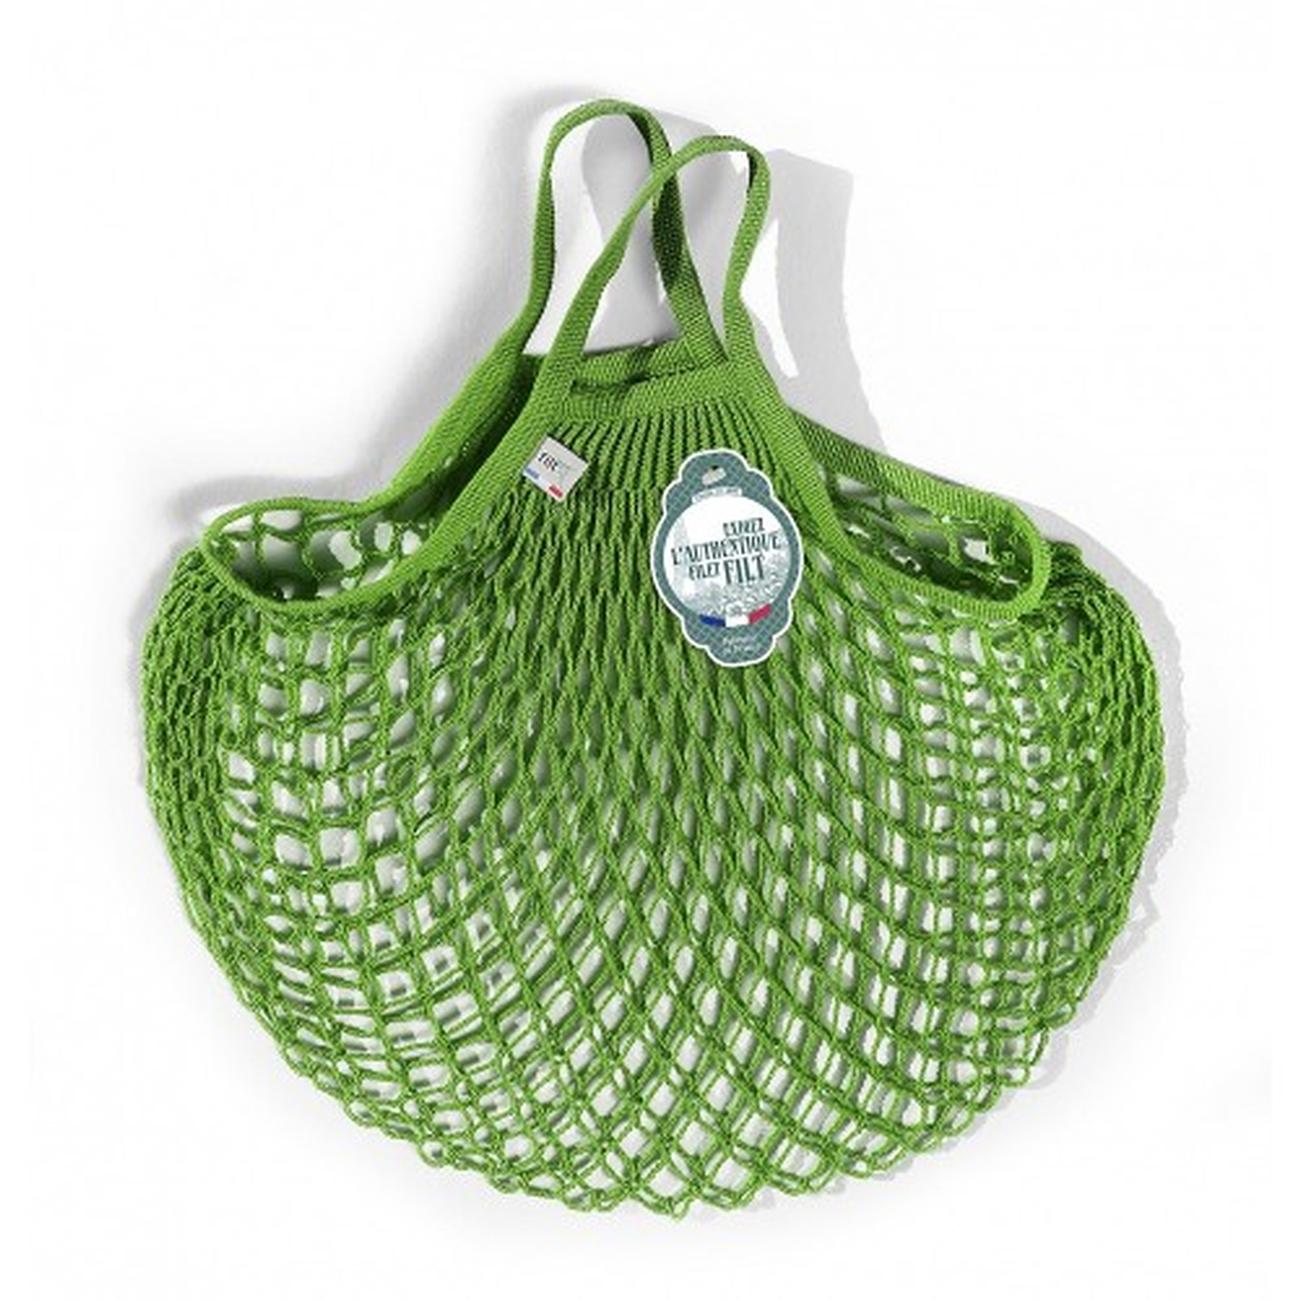 filt-French-market-bag-short-vert-green - Filt French Market Bag Short Vert Laitue